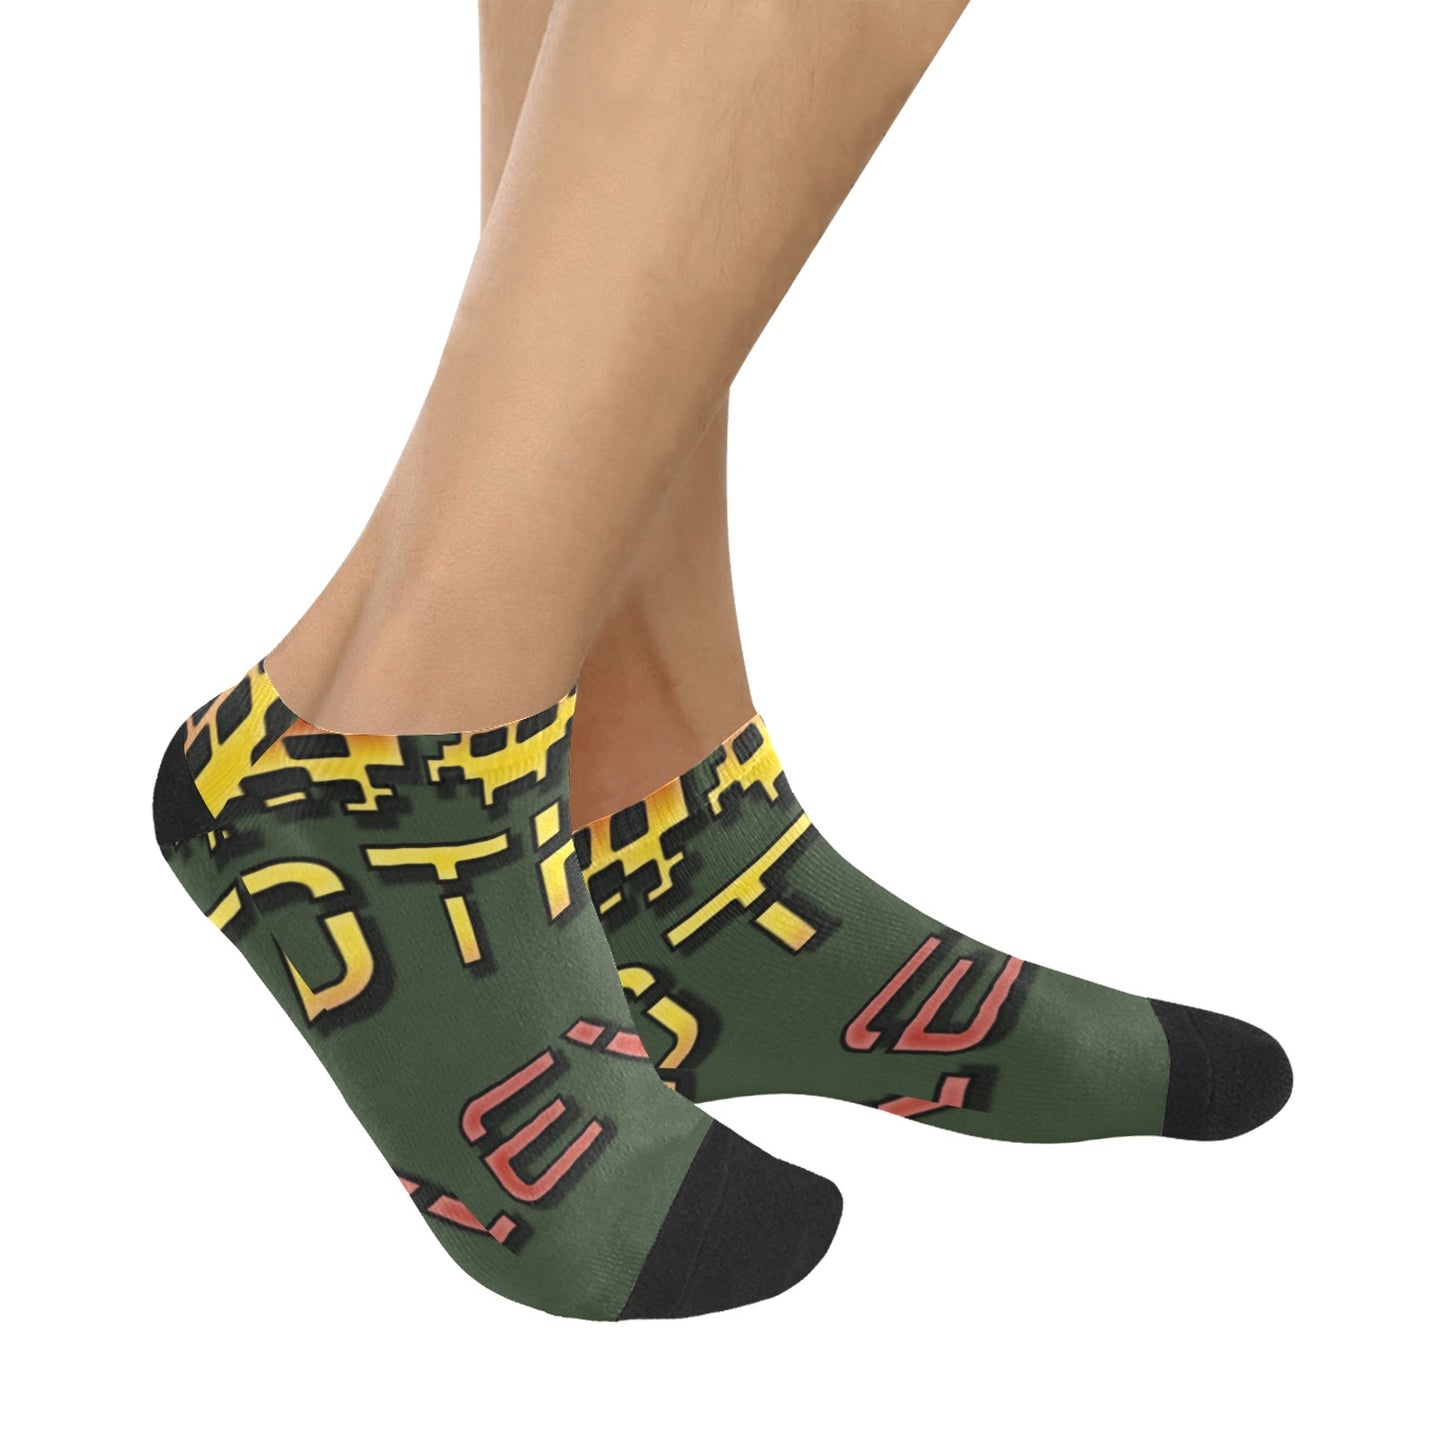 fz men's levels ankle socks one size / fz levels socks - dark green men's ankle socks